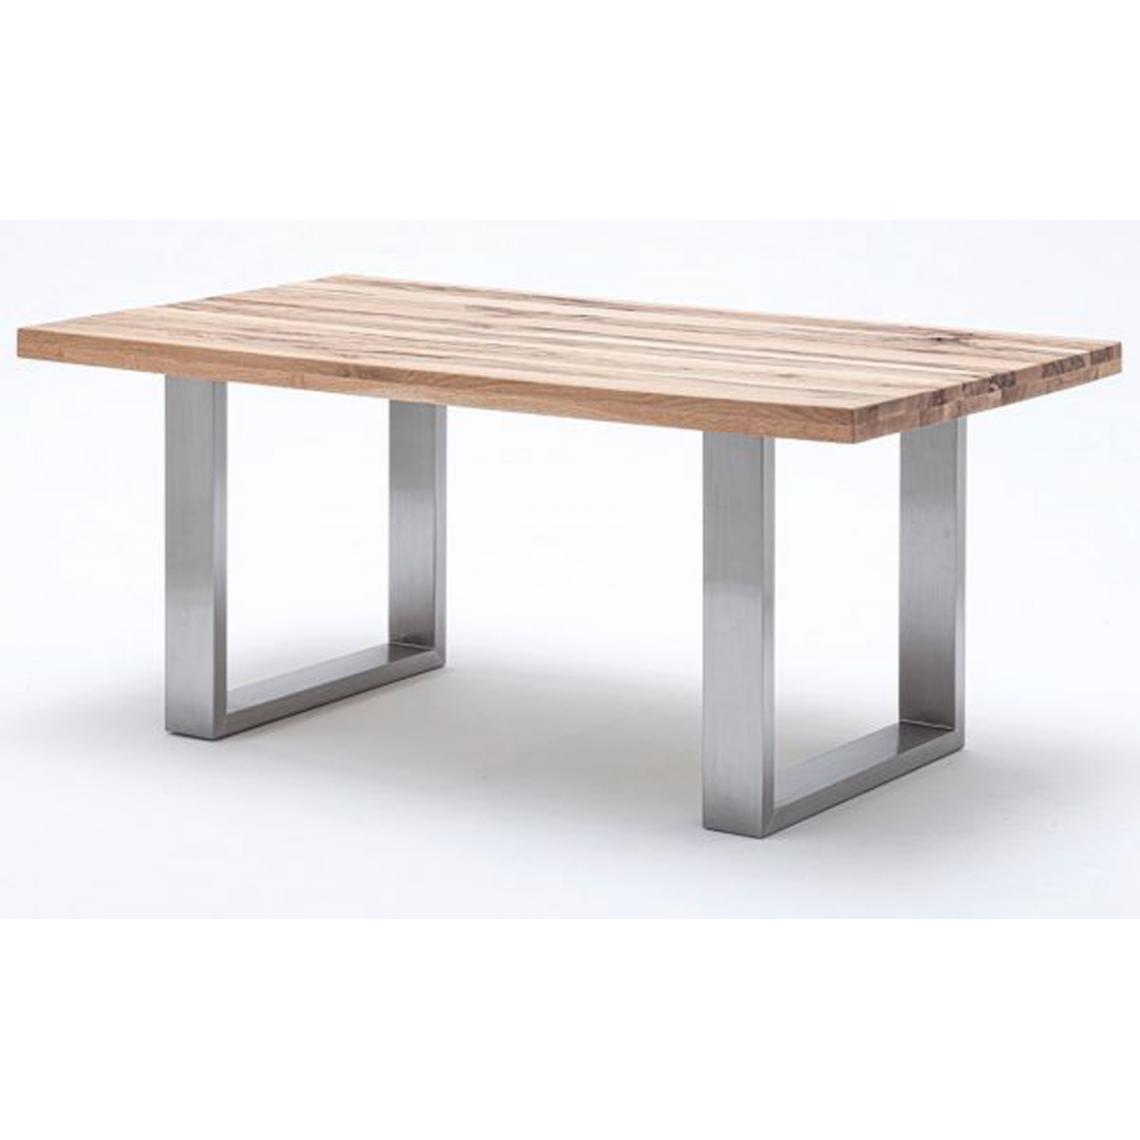 Pegane - Table à manger en chêne sauvage, laqué mat massif - L.260 x H.76 x P.100 cm -PEGANE- - Tables à manger